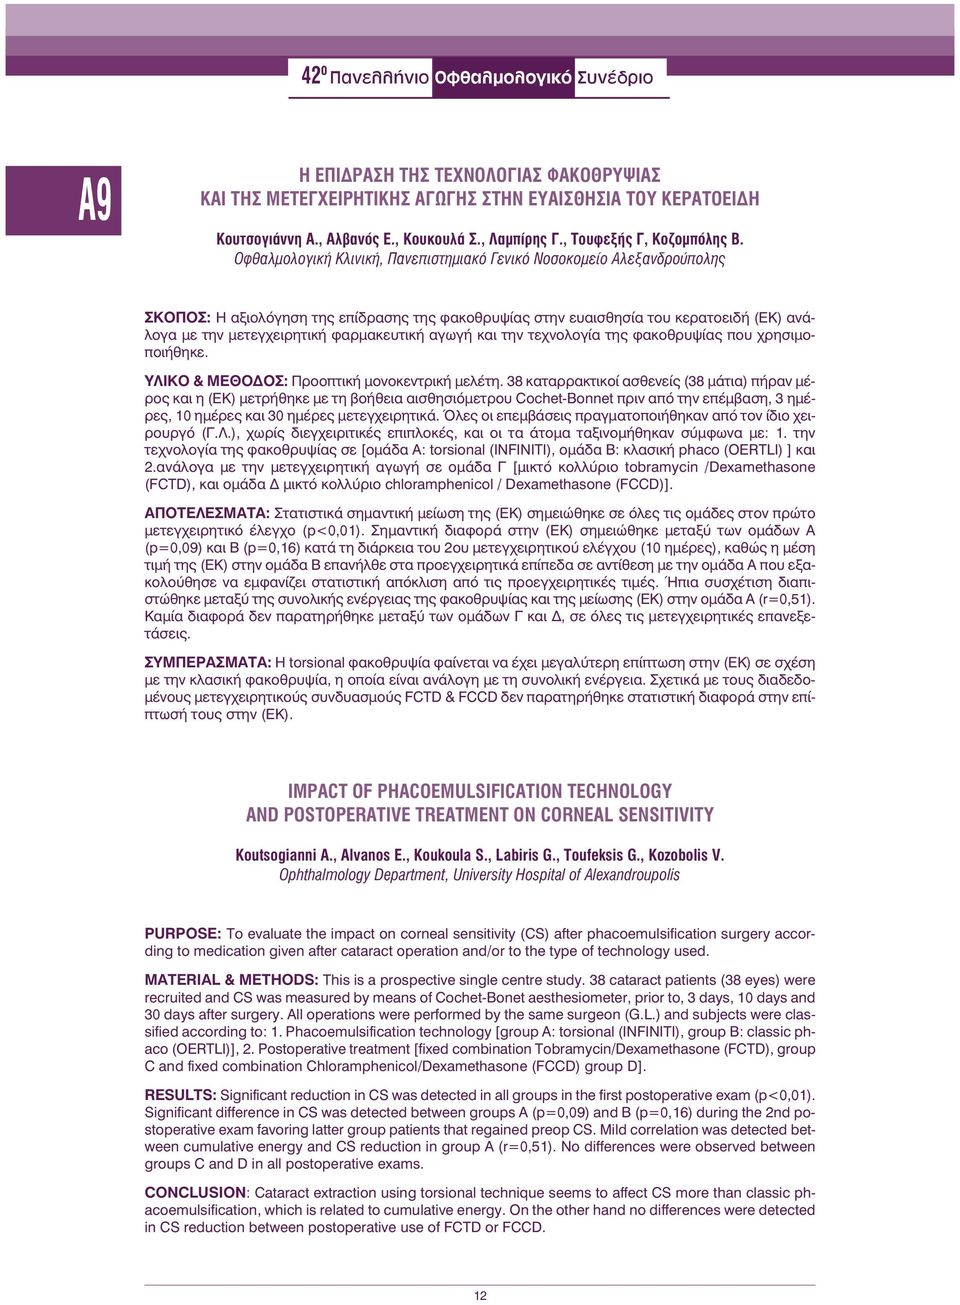 Οφθαλμολογική Κλινική, Πανεπιστημιακό Γενικό Νοσοκομείο Αλεξανδρούπολης ΣΚΟΠΟΣ: Ηαξιολόγηση της επίδρασης της φακοθρυψίας στην ευαισθησία του κερατοειδή (ΕΚ) ανάλογα με την μετεγχειρητική